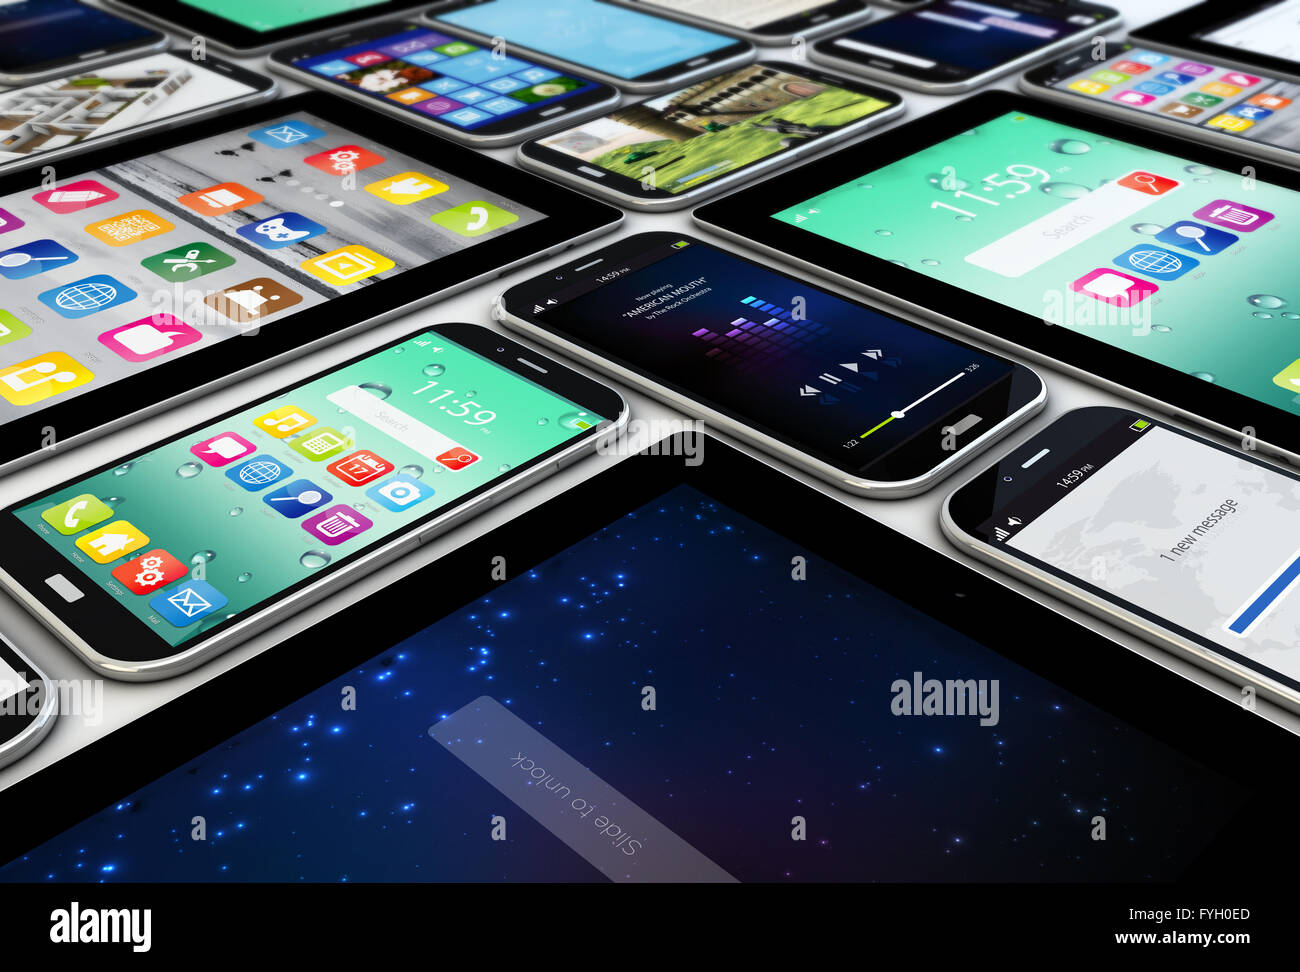 Concepto de movilidad: representar una colección de dispositivos móviles, tablets y smartphones Foto de stock